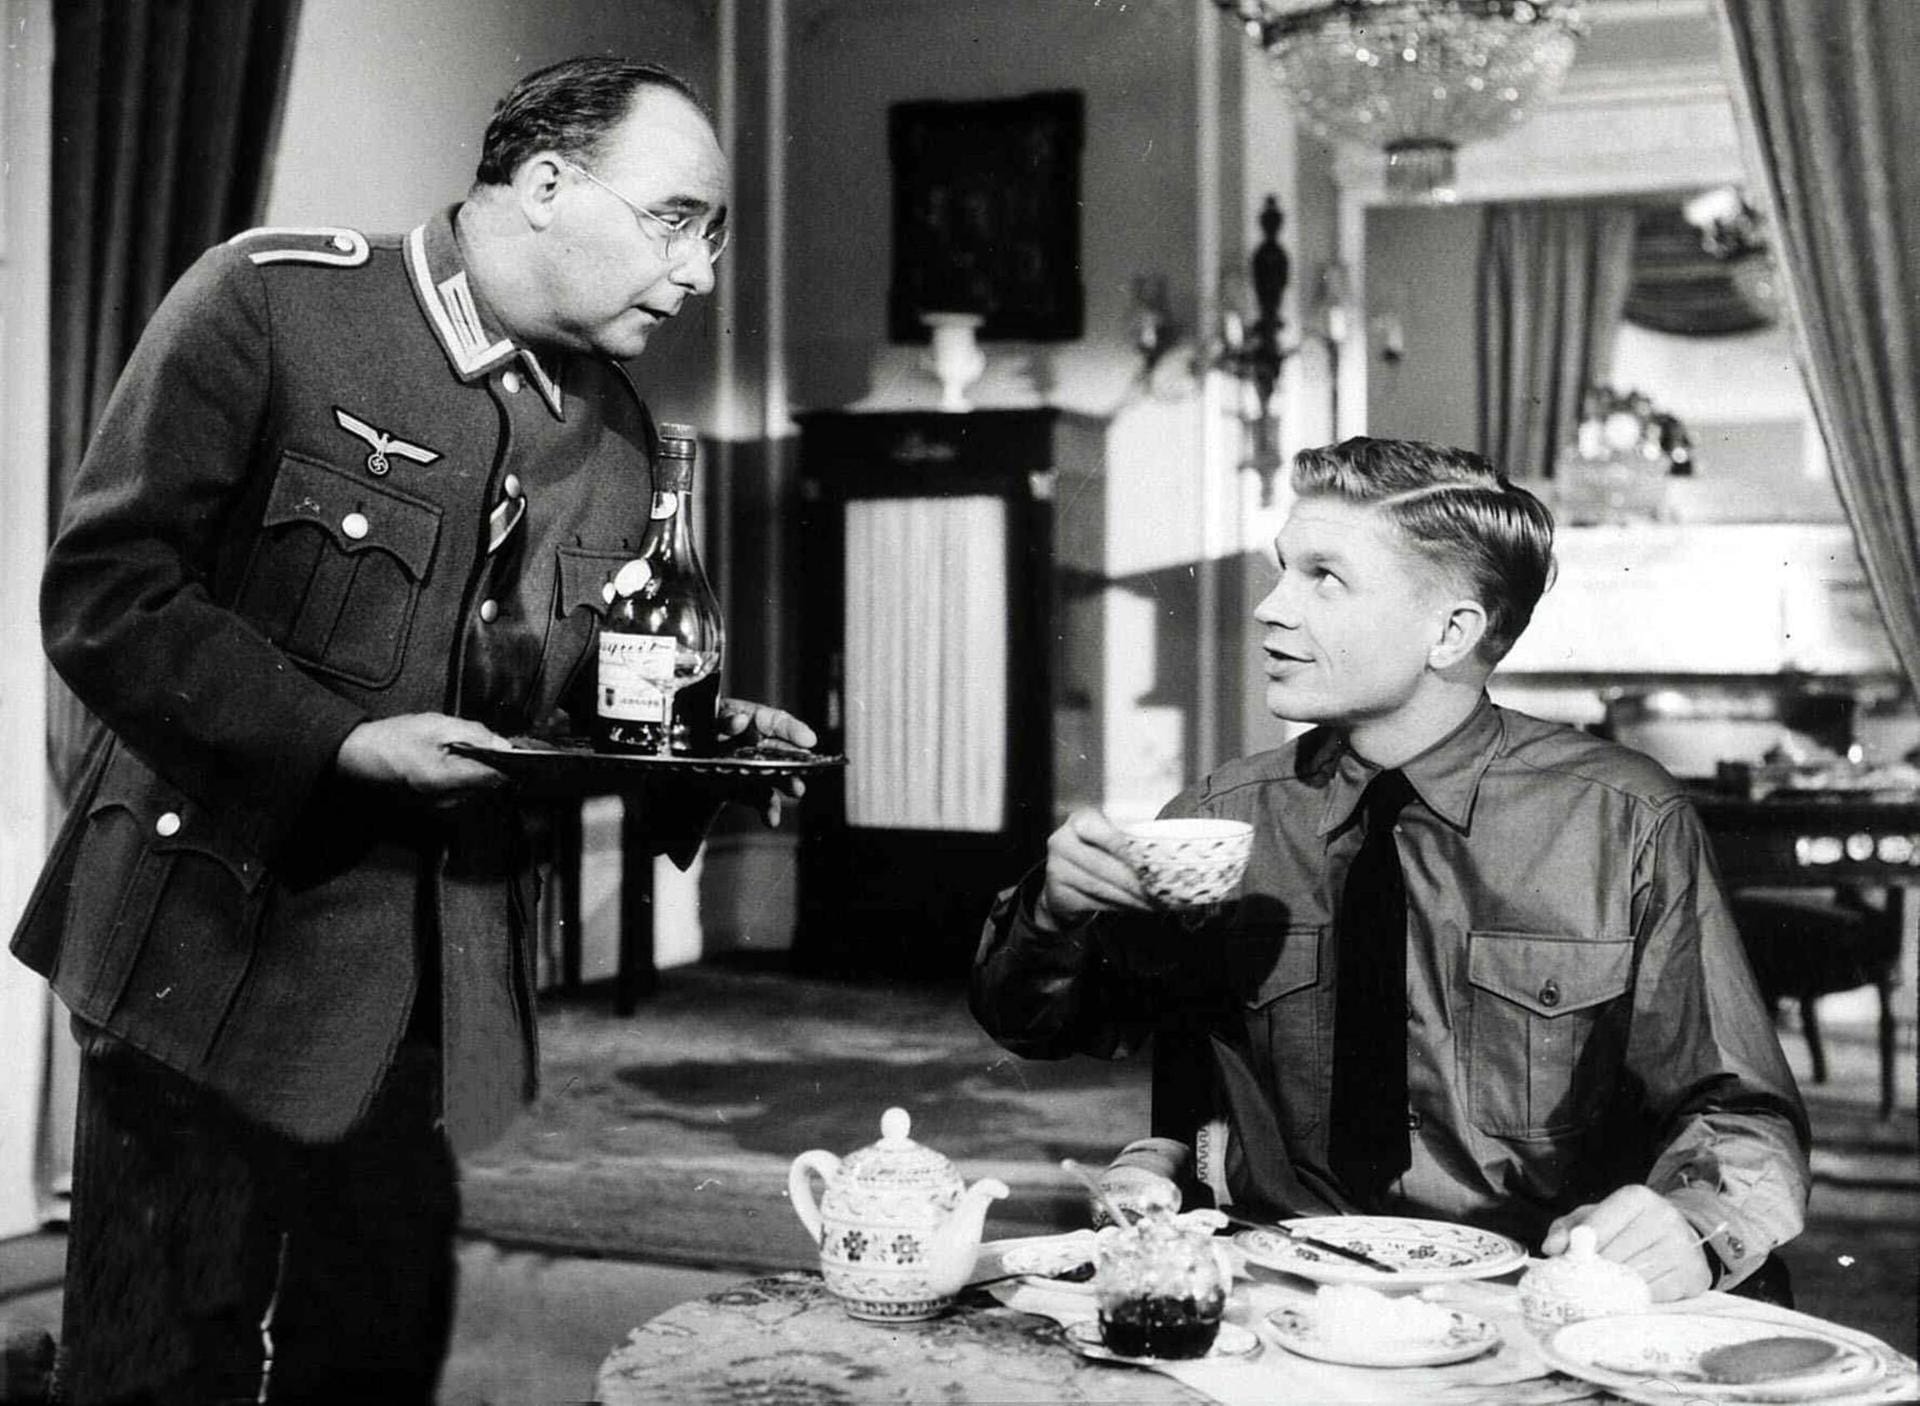 Vier Jahre später war Hardy Krüger dann in "Der Fuchs von Paris". Im Film schlägt er sich als junger deutscher Offizier auf die Seite der Résistance.